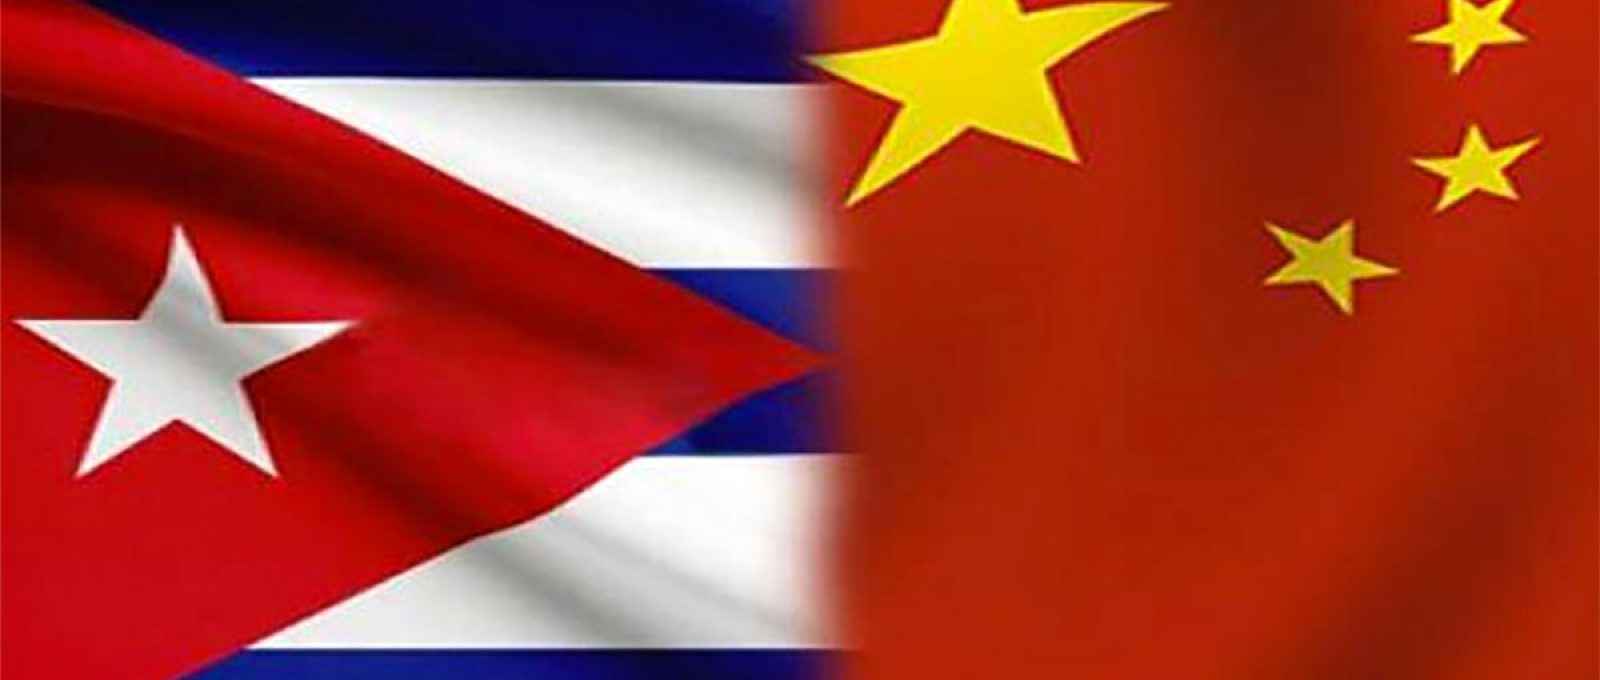 Capa-China-Cuba